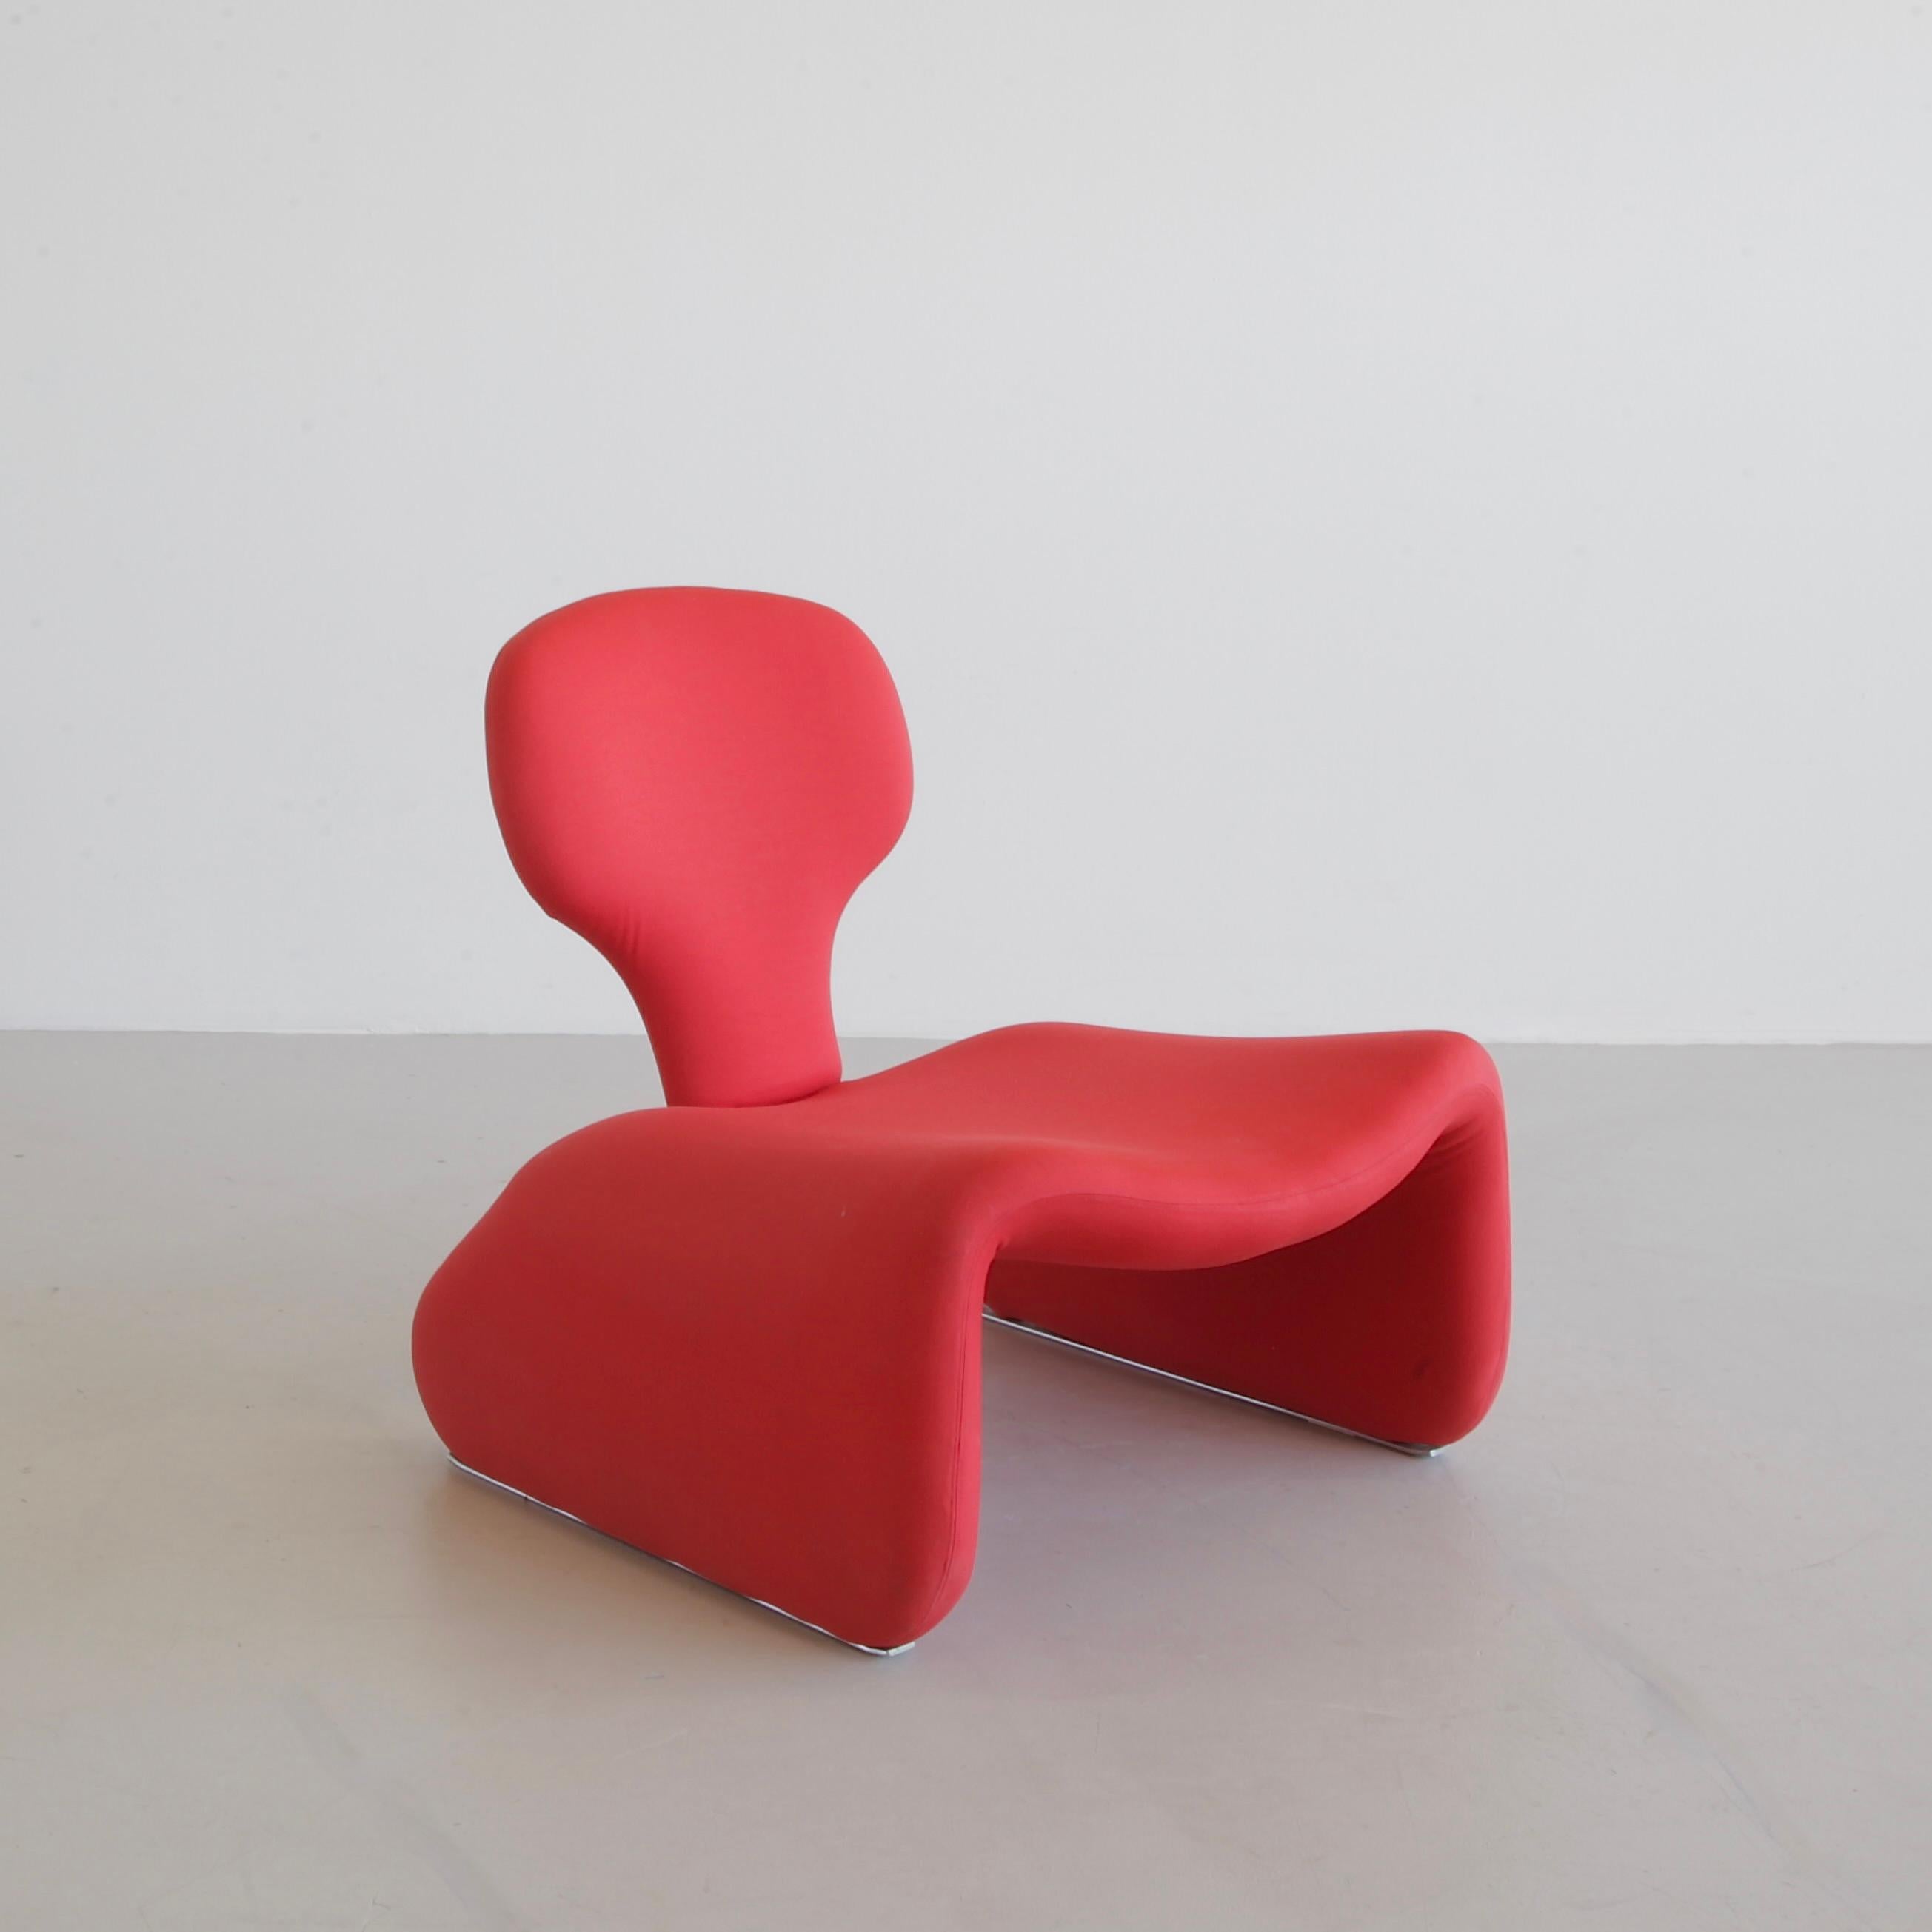 Ein Set aus DIJNN-Stuhl und Fußhocker im roten Original-Stretchstoff. Metallkonstruktion mit Stoff- und Metallschiebern.

Der Djinn-Stuhl ist Teil einer Serie von Djinn-Möbeln, die der bekannte französische Designer Olivier Mourgue entworfen hat.